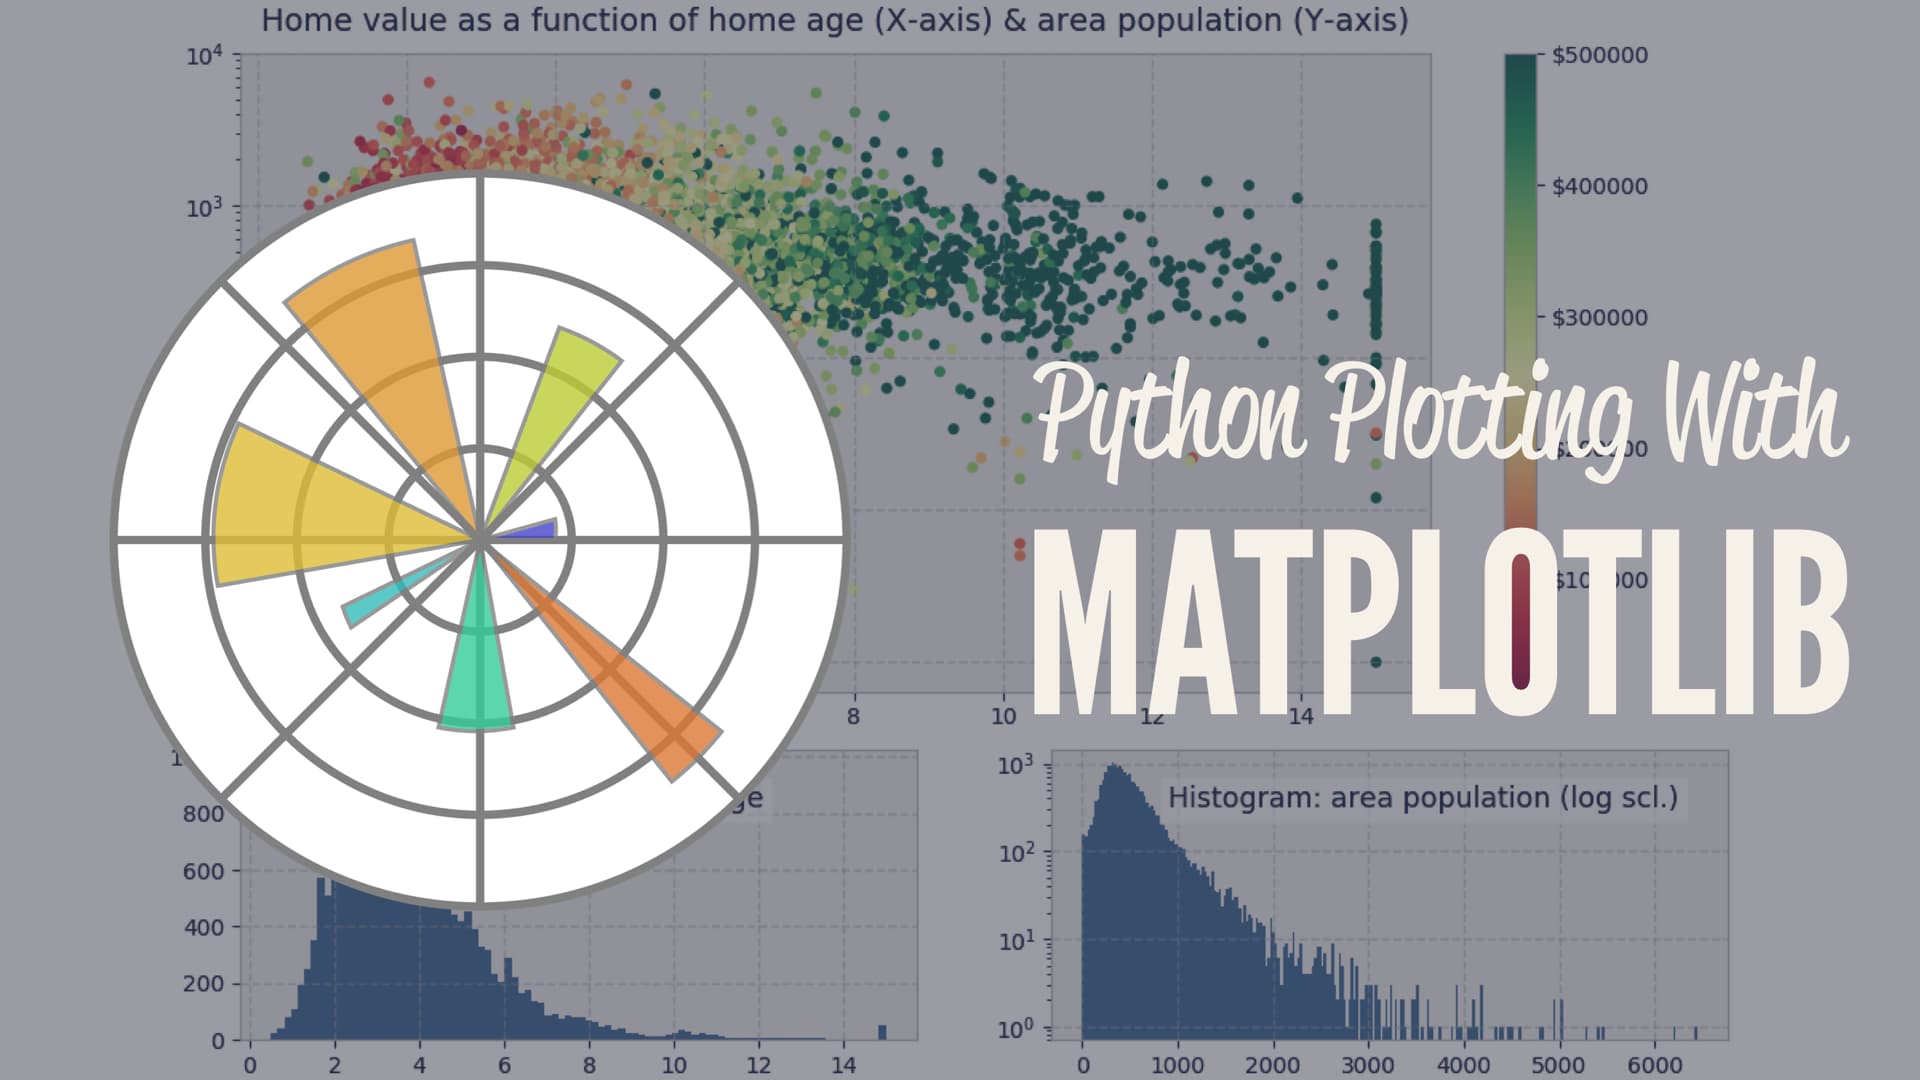 plotting data in python